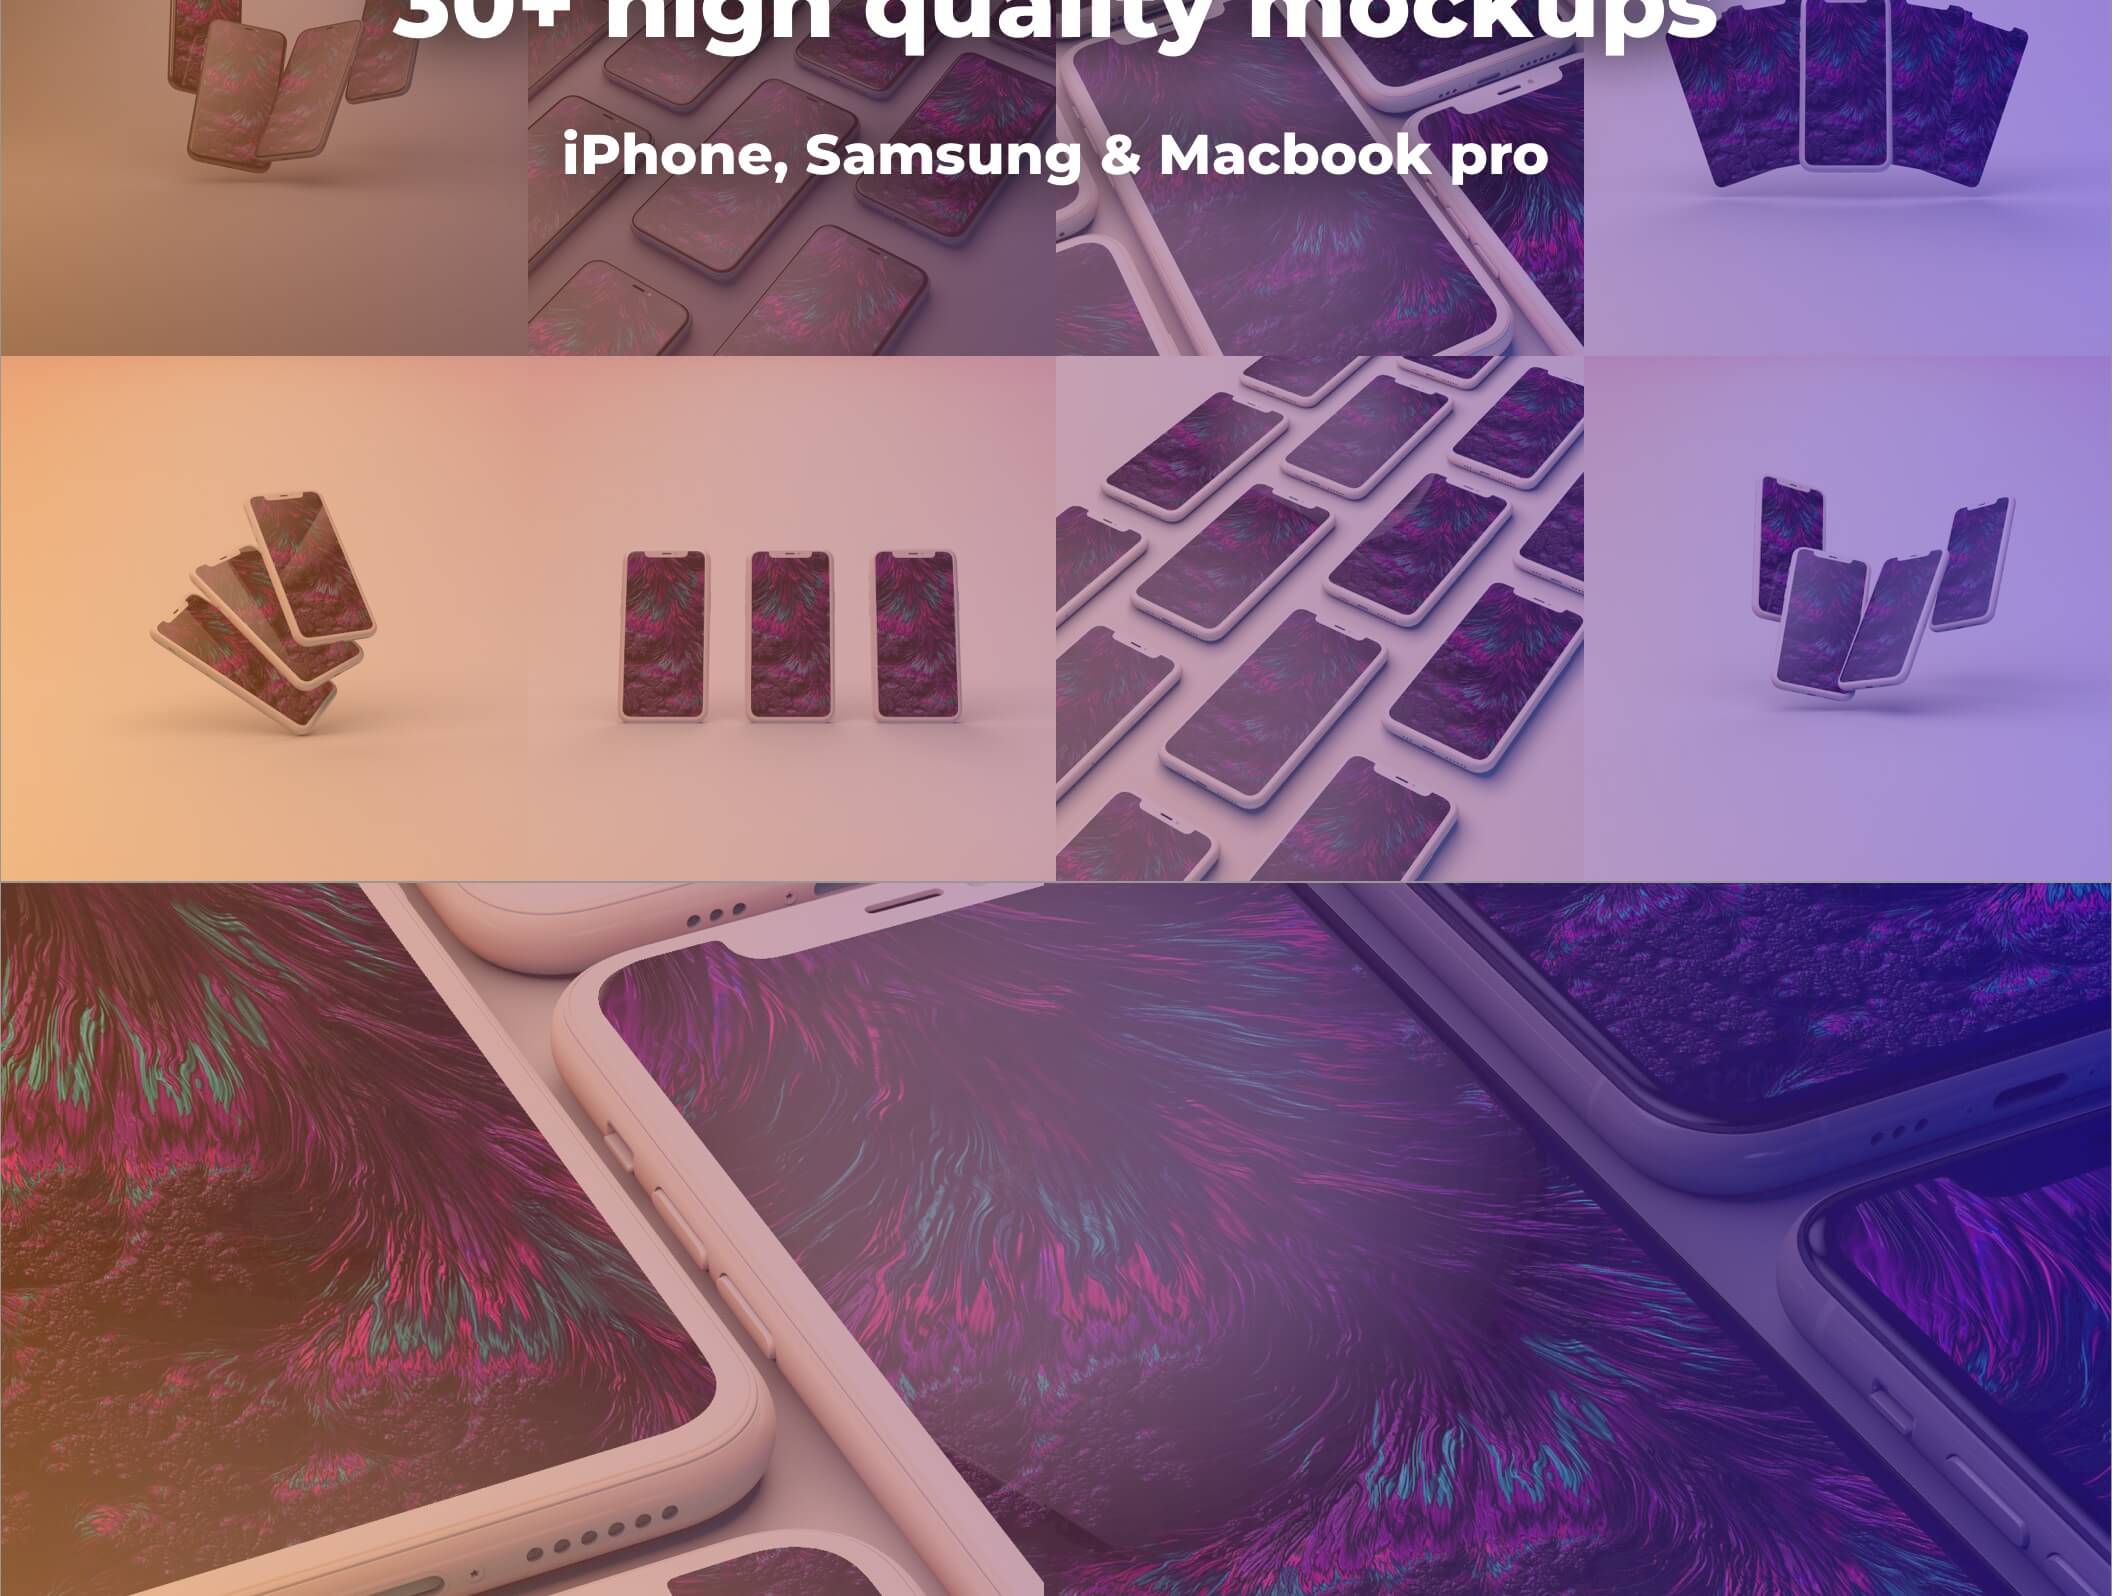 精致概念化苹果手机样机模板素材High quality mockup pack Clay, Colors & Realistic插图2